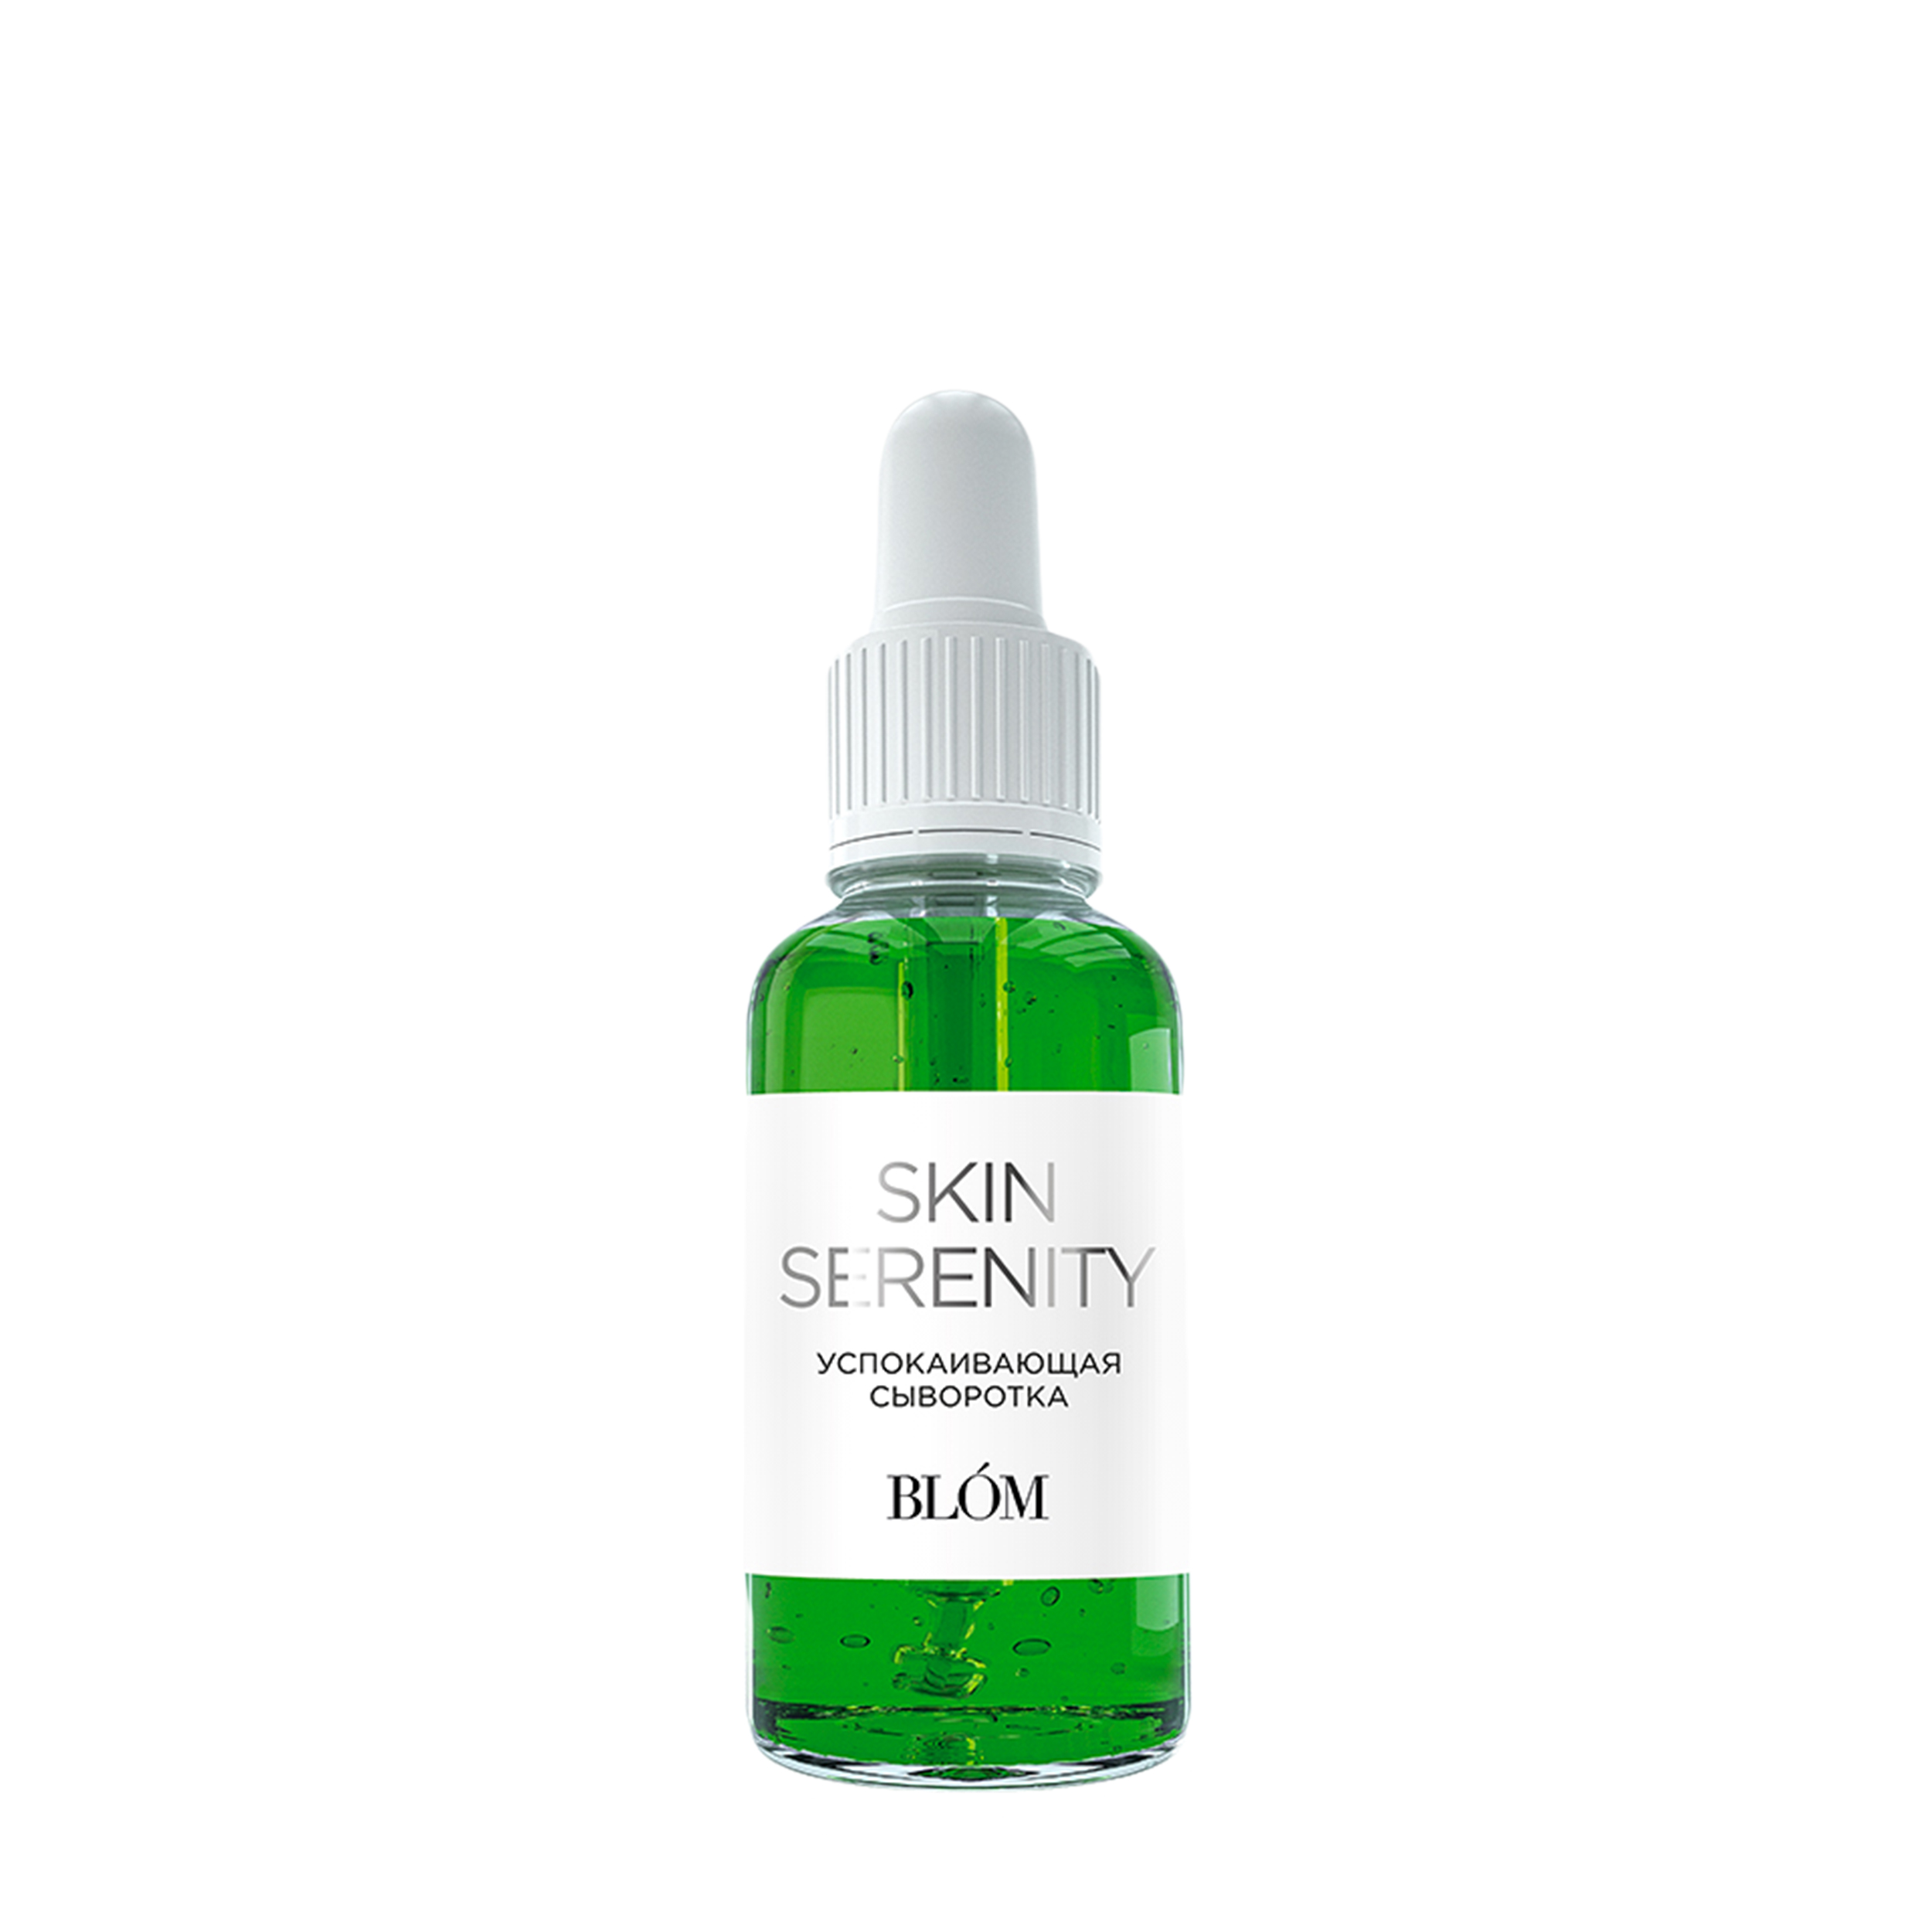 BLOM Успокаивающая сыворотка для лица и тела Skin Serenity blom7-30 - фото 1